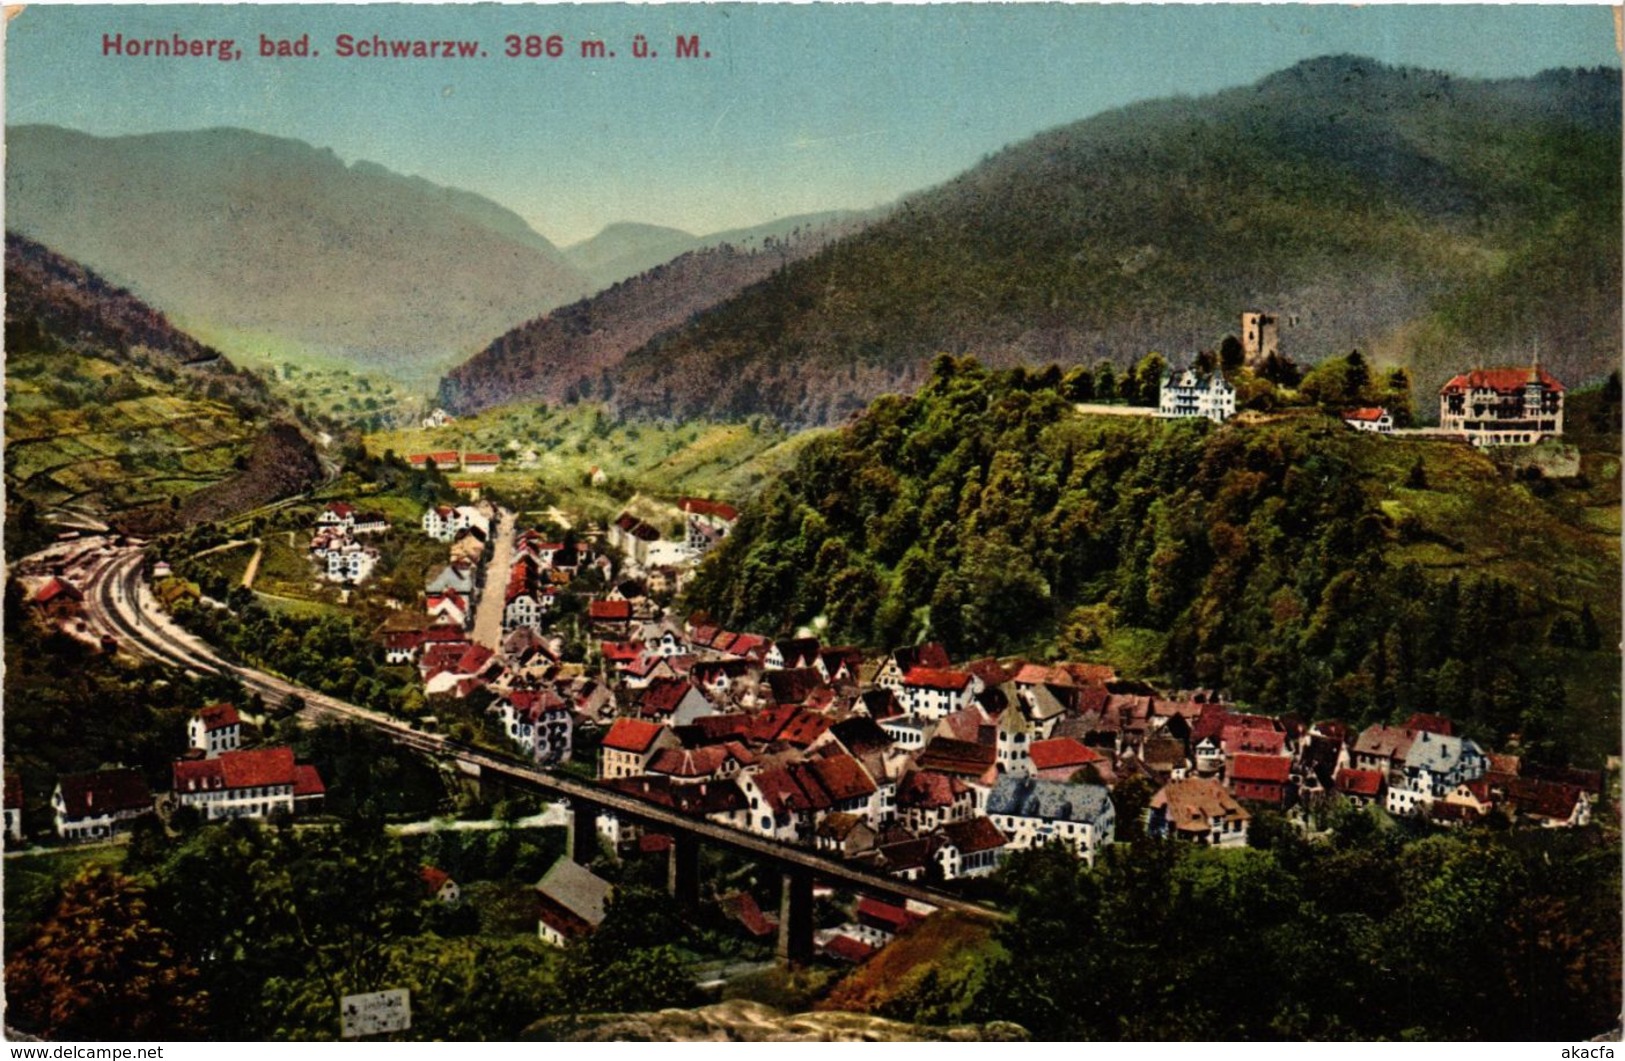 CPA AK Hornberg Bad Schwarzwald GERMANY (934589) - Hornberg